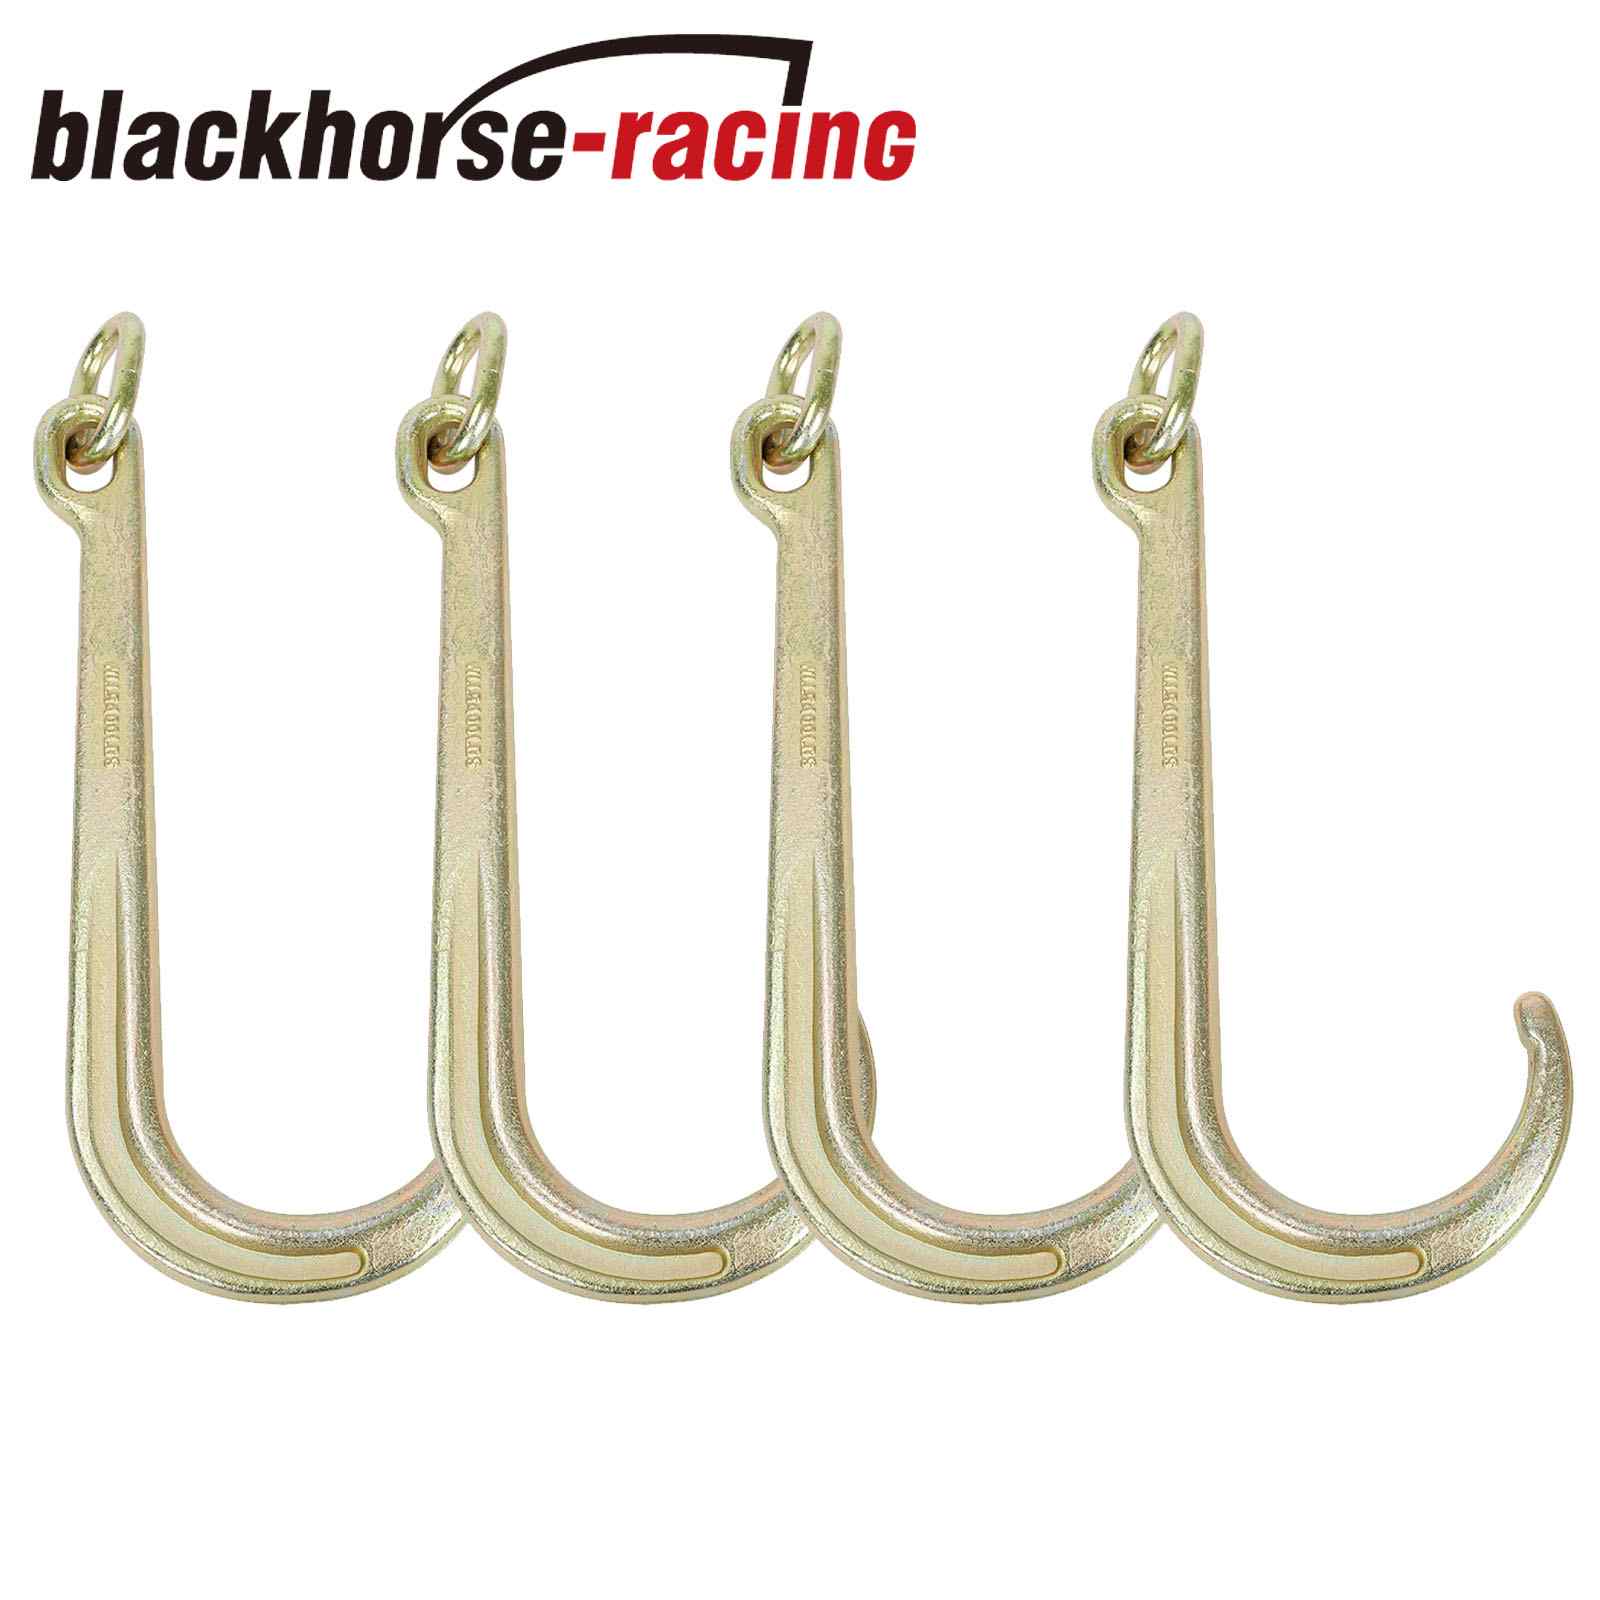 http://www.blackhorse-racing.com/cdn/shop/products/1_9_1_88912fce-3f48-444c-af6f-1051efa2b34e.jpg?v=1664500681